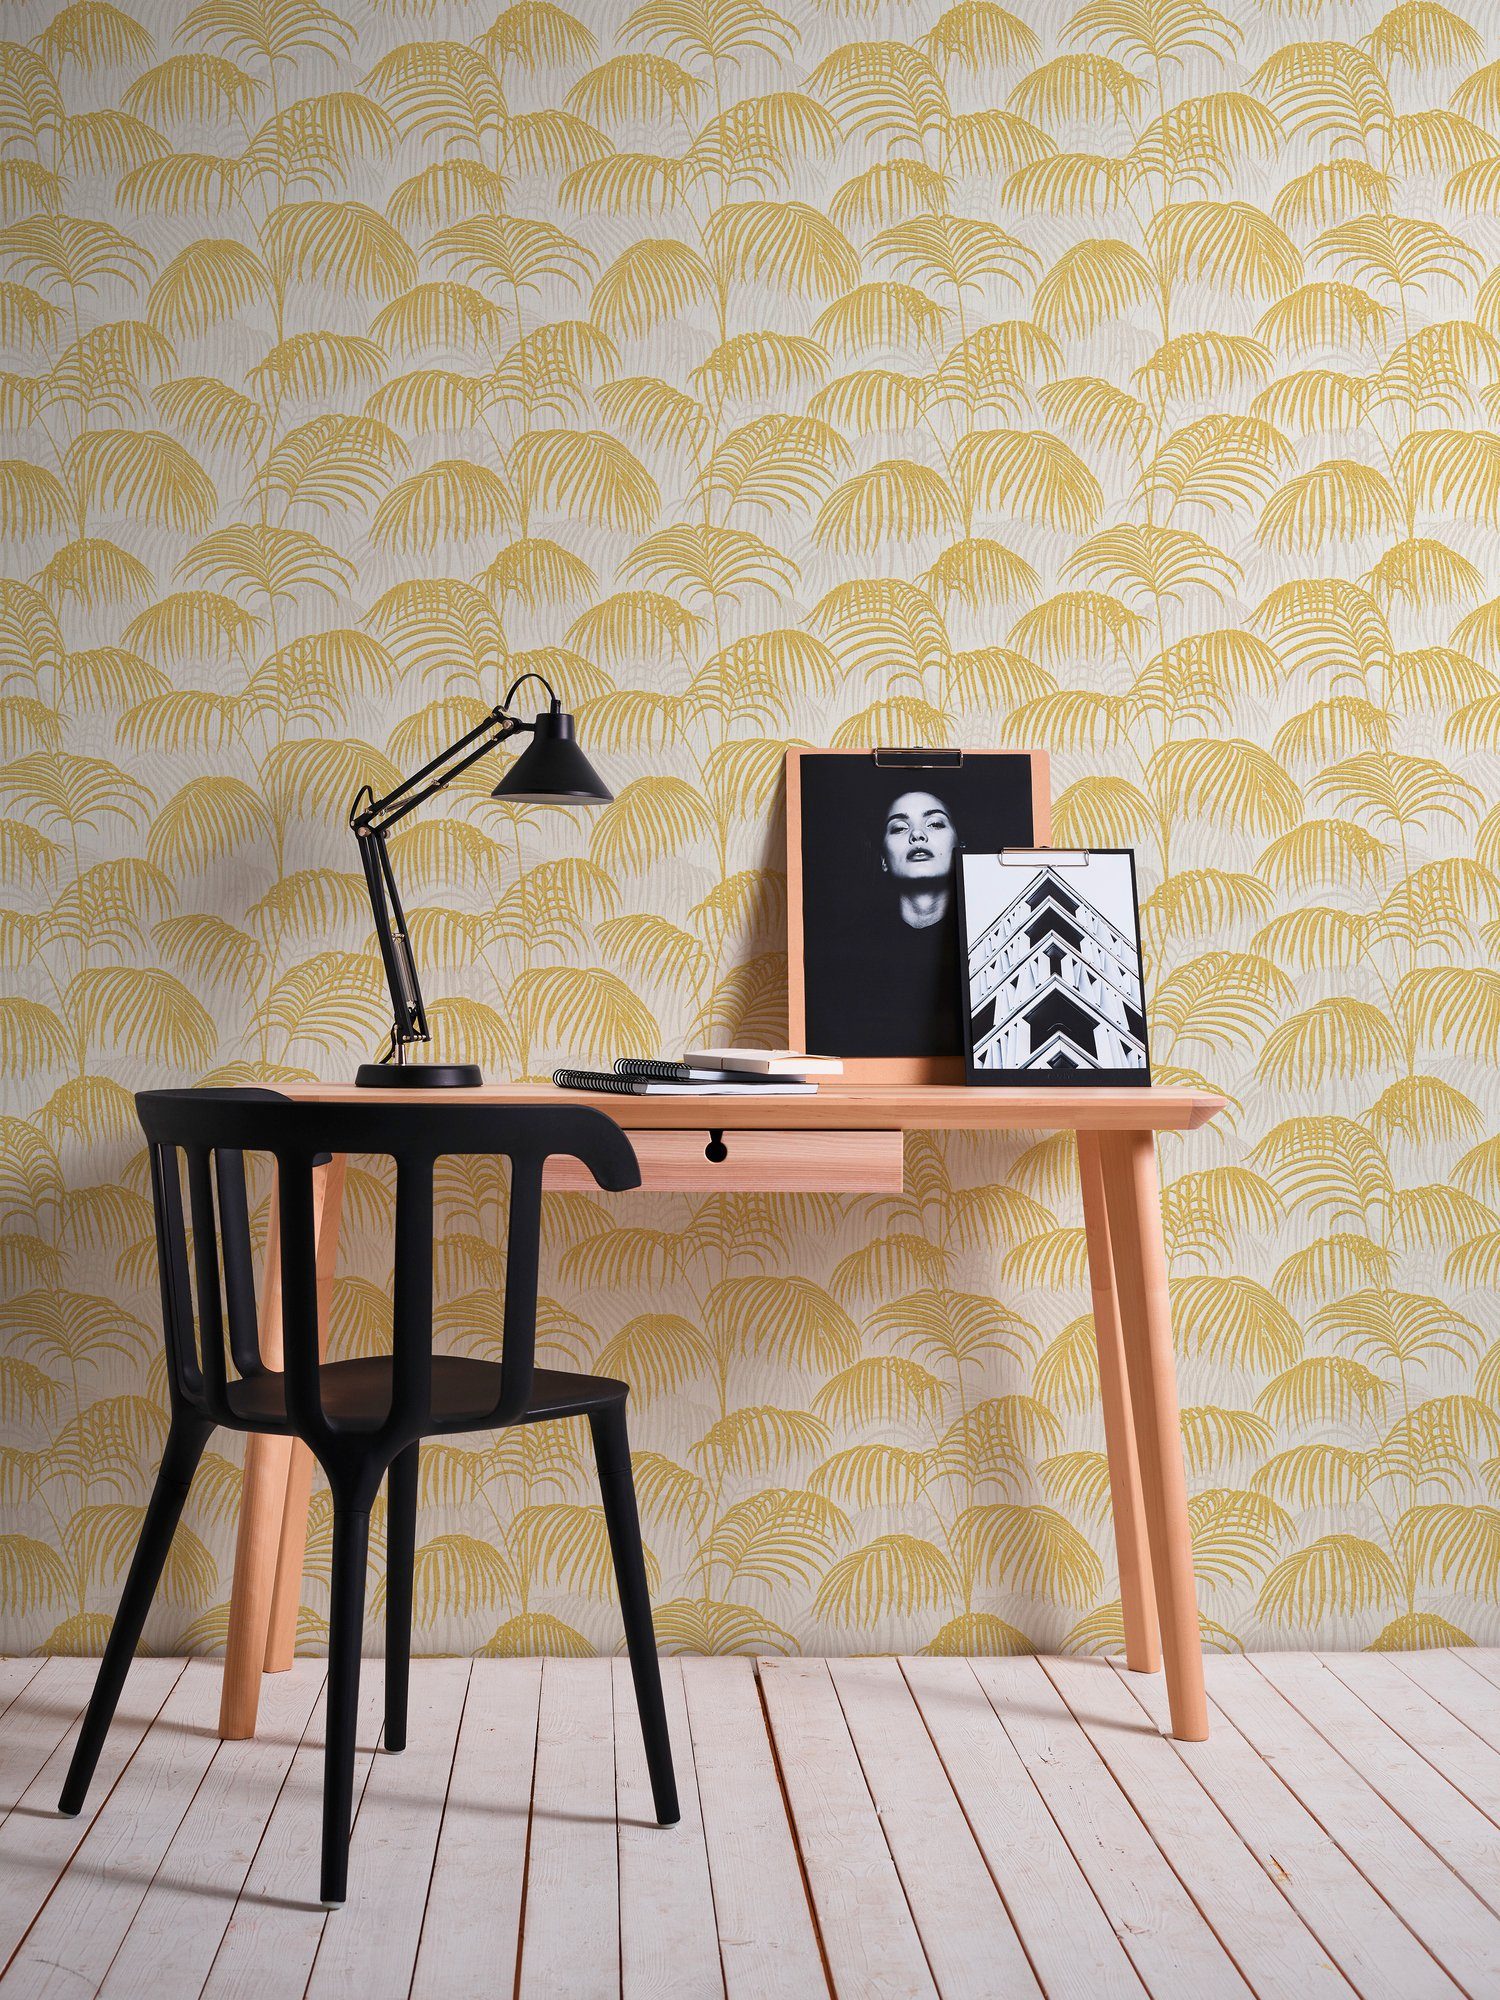 Architects Création Tessuto, Palmen A.S. samtig, Dschungeltapete Tapete Textiltapete botanisch, gold/gelb/weiß floral, Paper